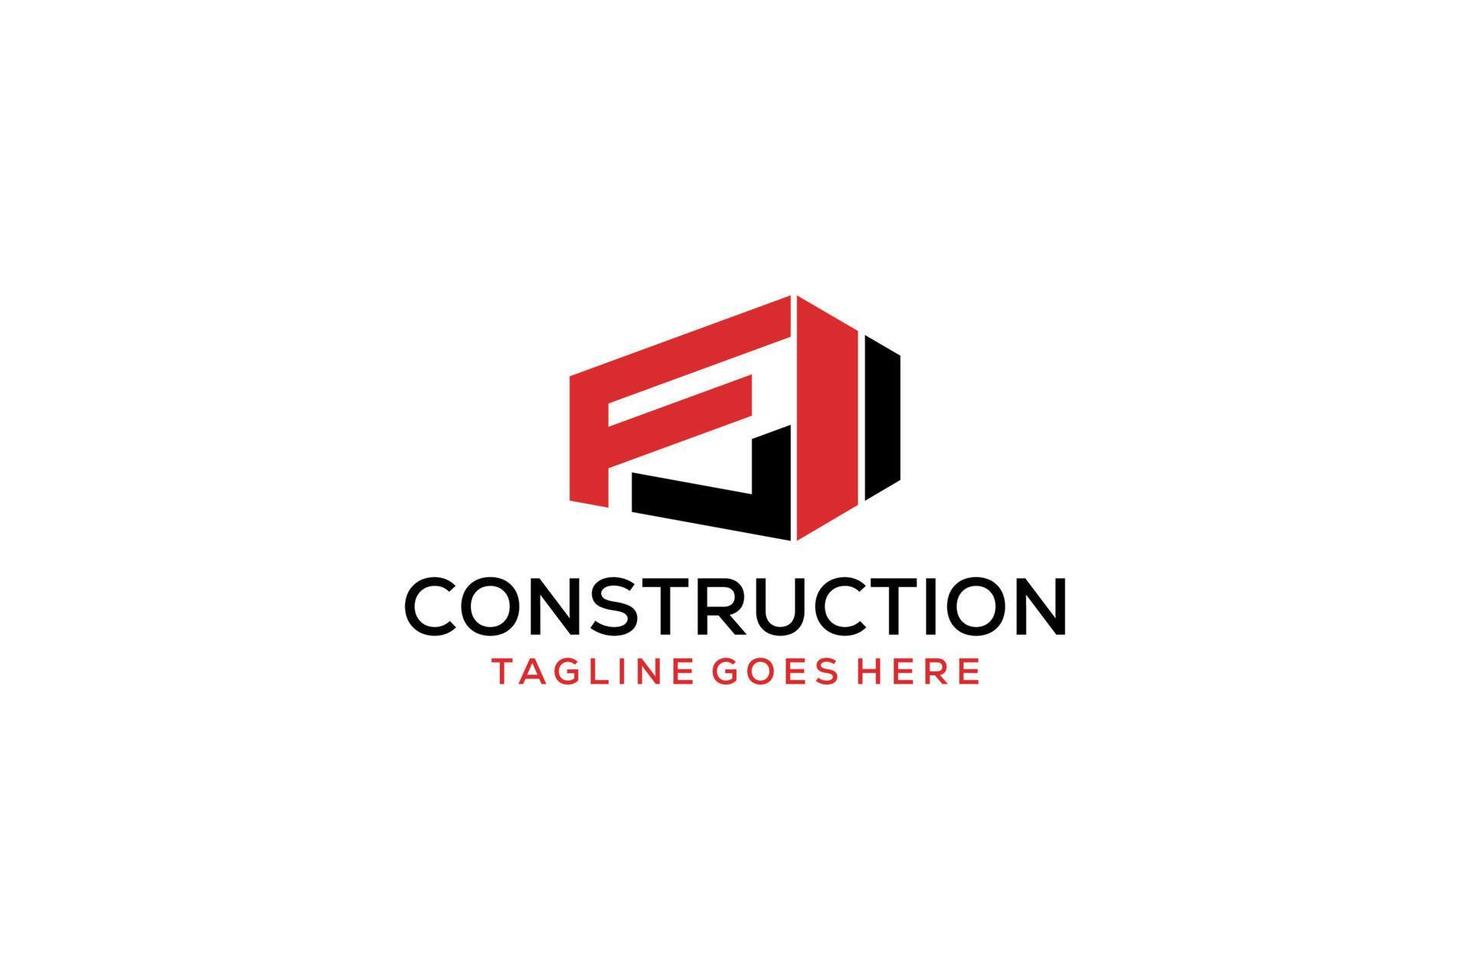 letra f para el logotipo de remodelación inmobiliaria. elemento de plantilla de diseño de logotipo de edificio de arquitectura de construcción. vector